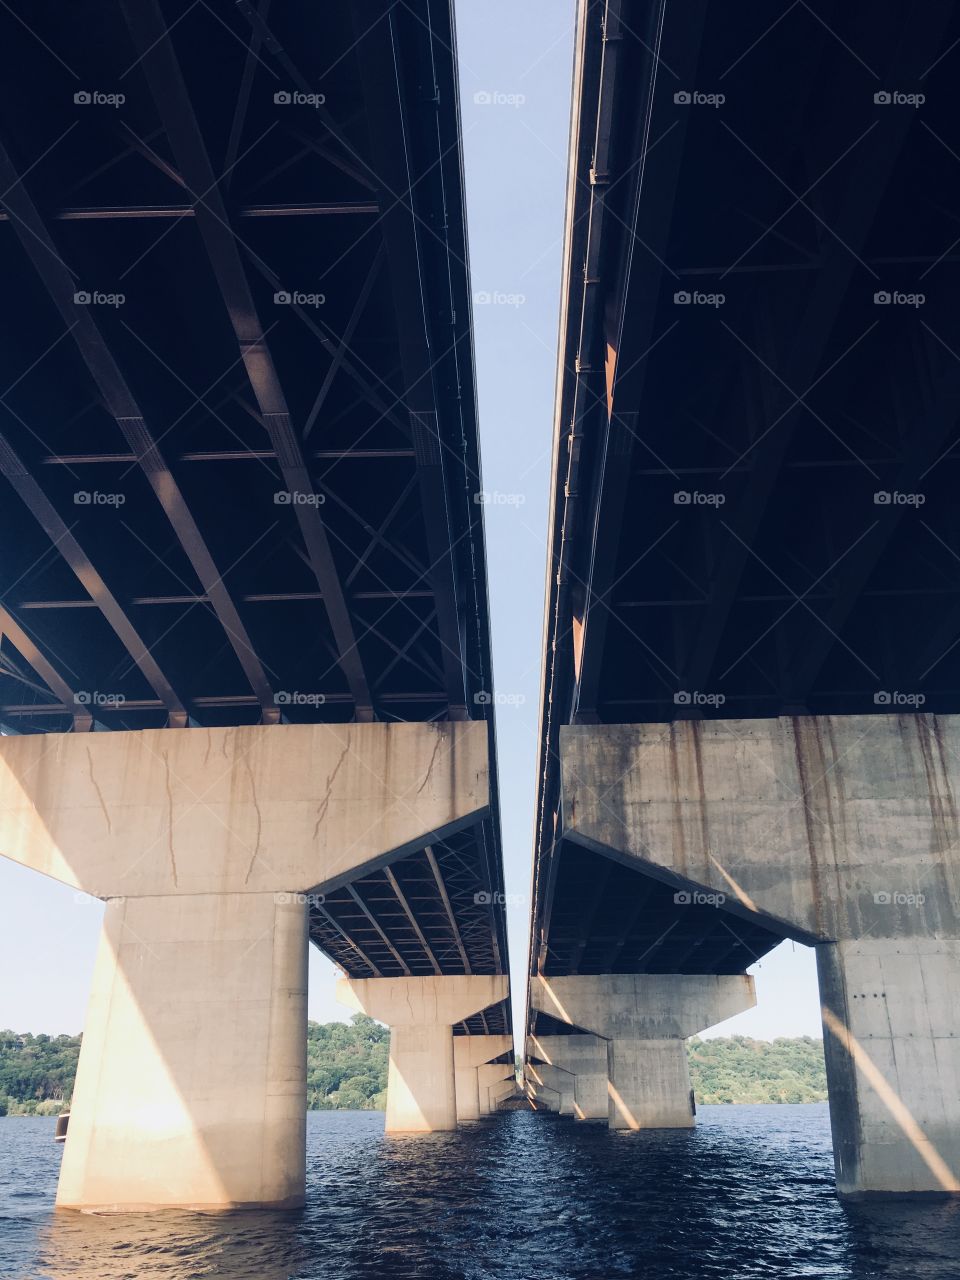 Under bridges